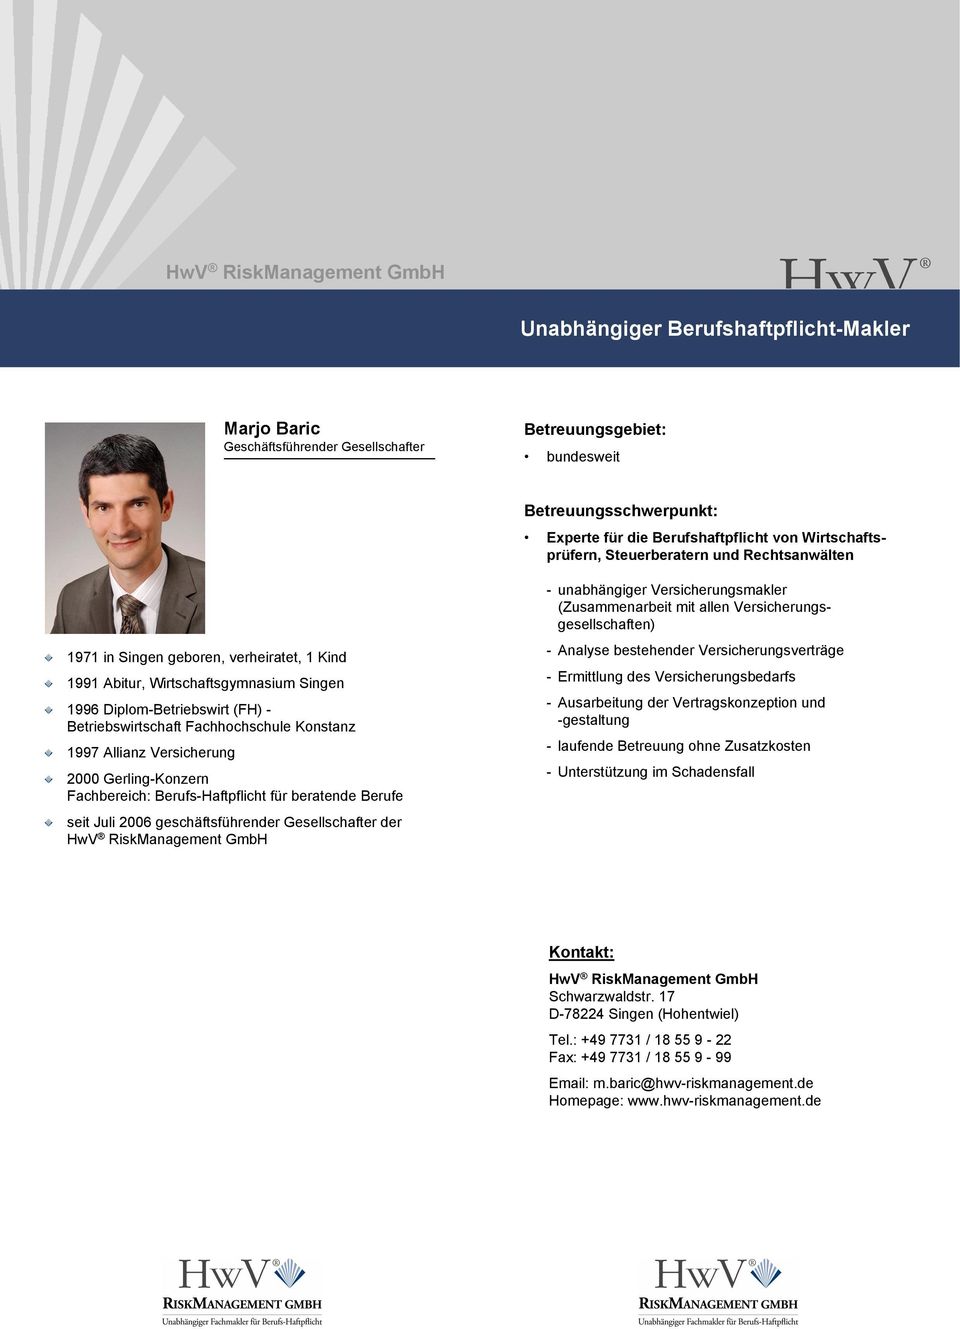 Allianz Versicherung 2000 Gerling-Konzern Fachbereich: Berufs-Haftpflicht für beratende Berufe seit Juli 2006 geschäftsführender Gesellschafter der HwV RiskManagement GmbH - unabhängiger